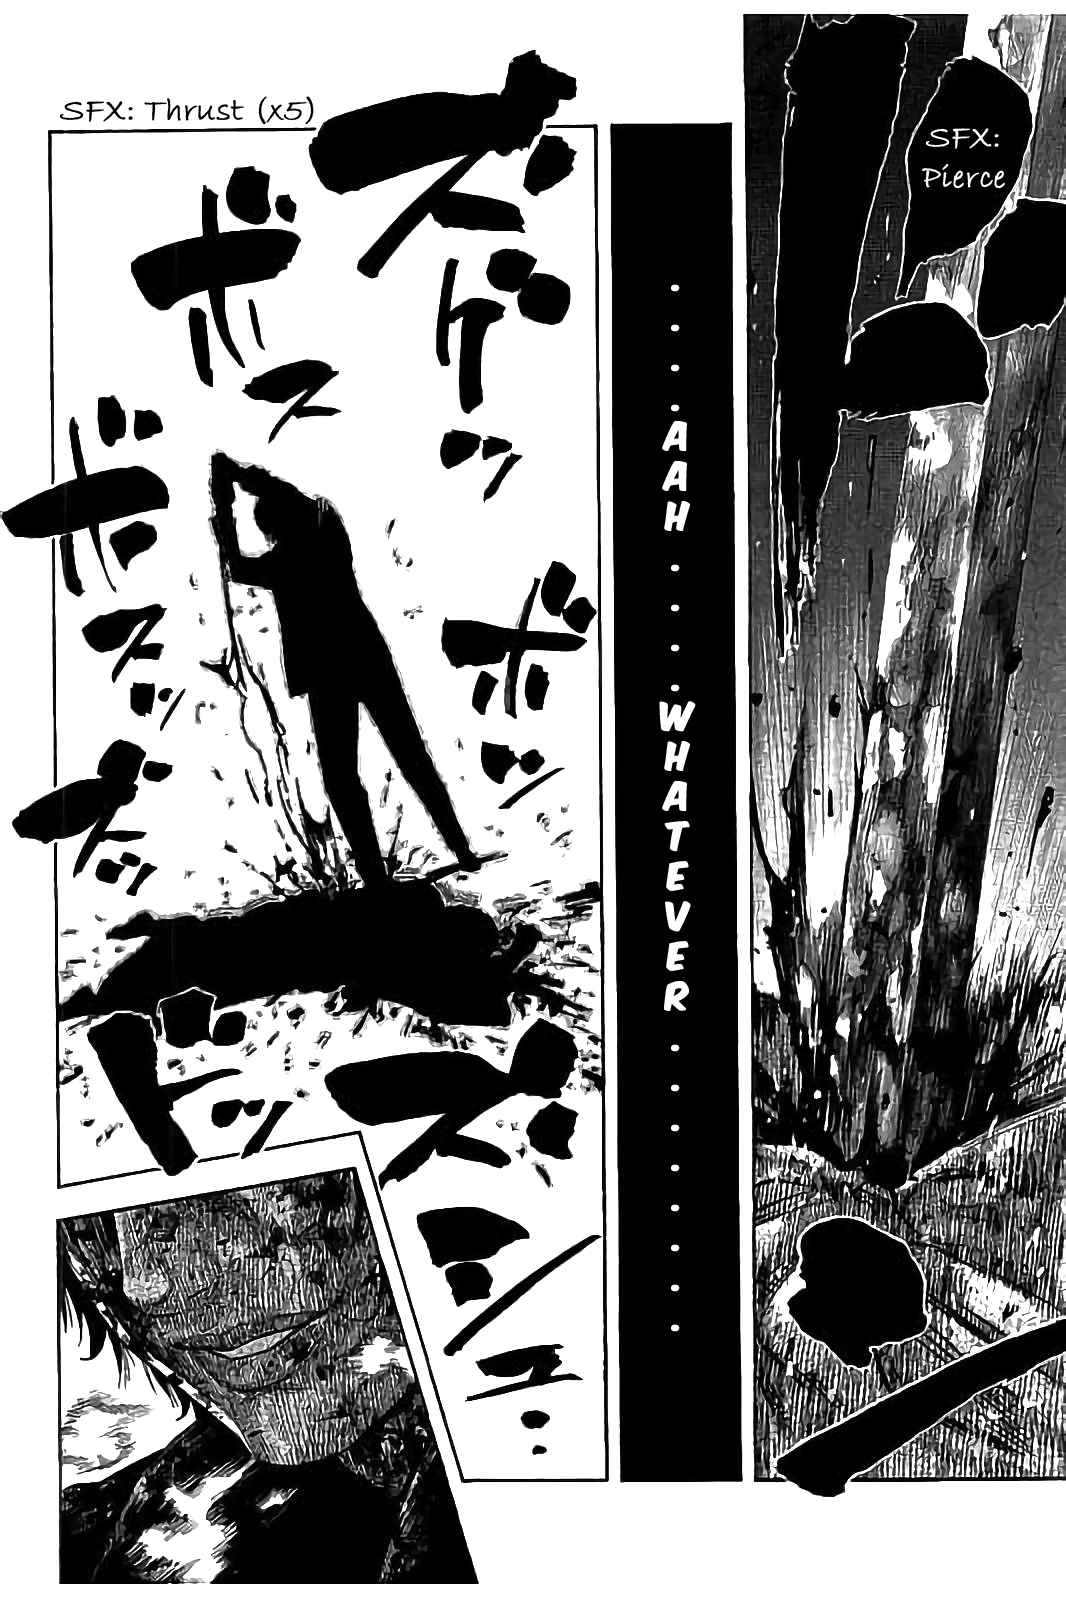 Kudan no Gotoshi Vol. 3 Ch. 22 Shinji Fujisawa < Part 7 > Youta Onodera < Part 2 >